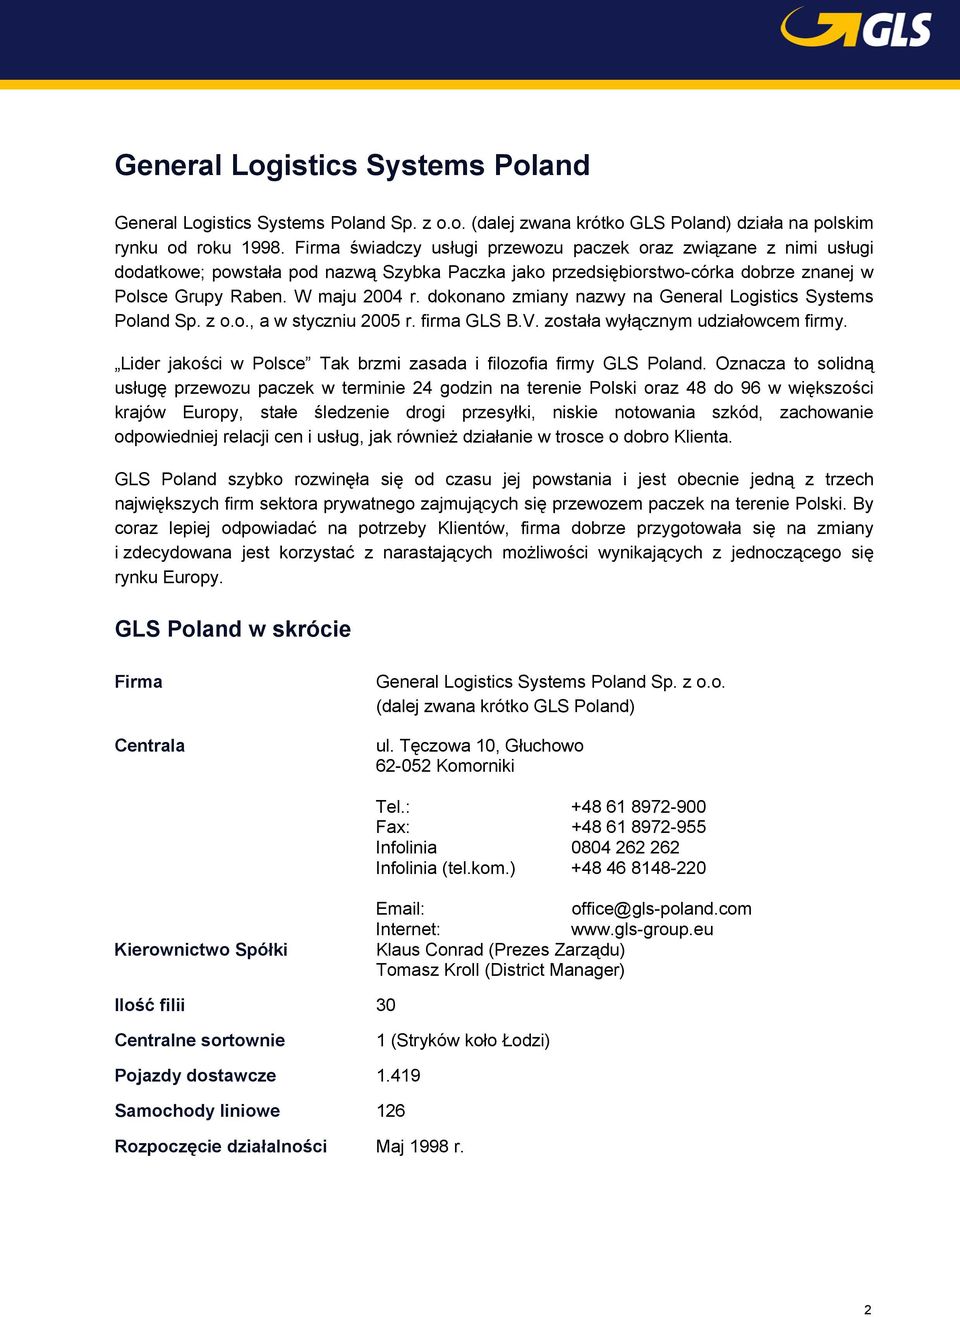 dokonano zmiany nazwy na General Logistics Systems Poland Sp. z o.o., a w styczniu 2005 r. firma GLS B.V. została wyłącznym udziałowcem firmy.